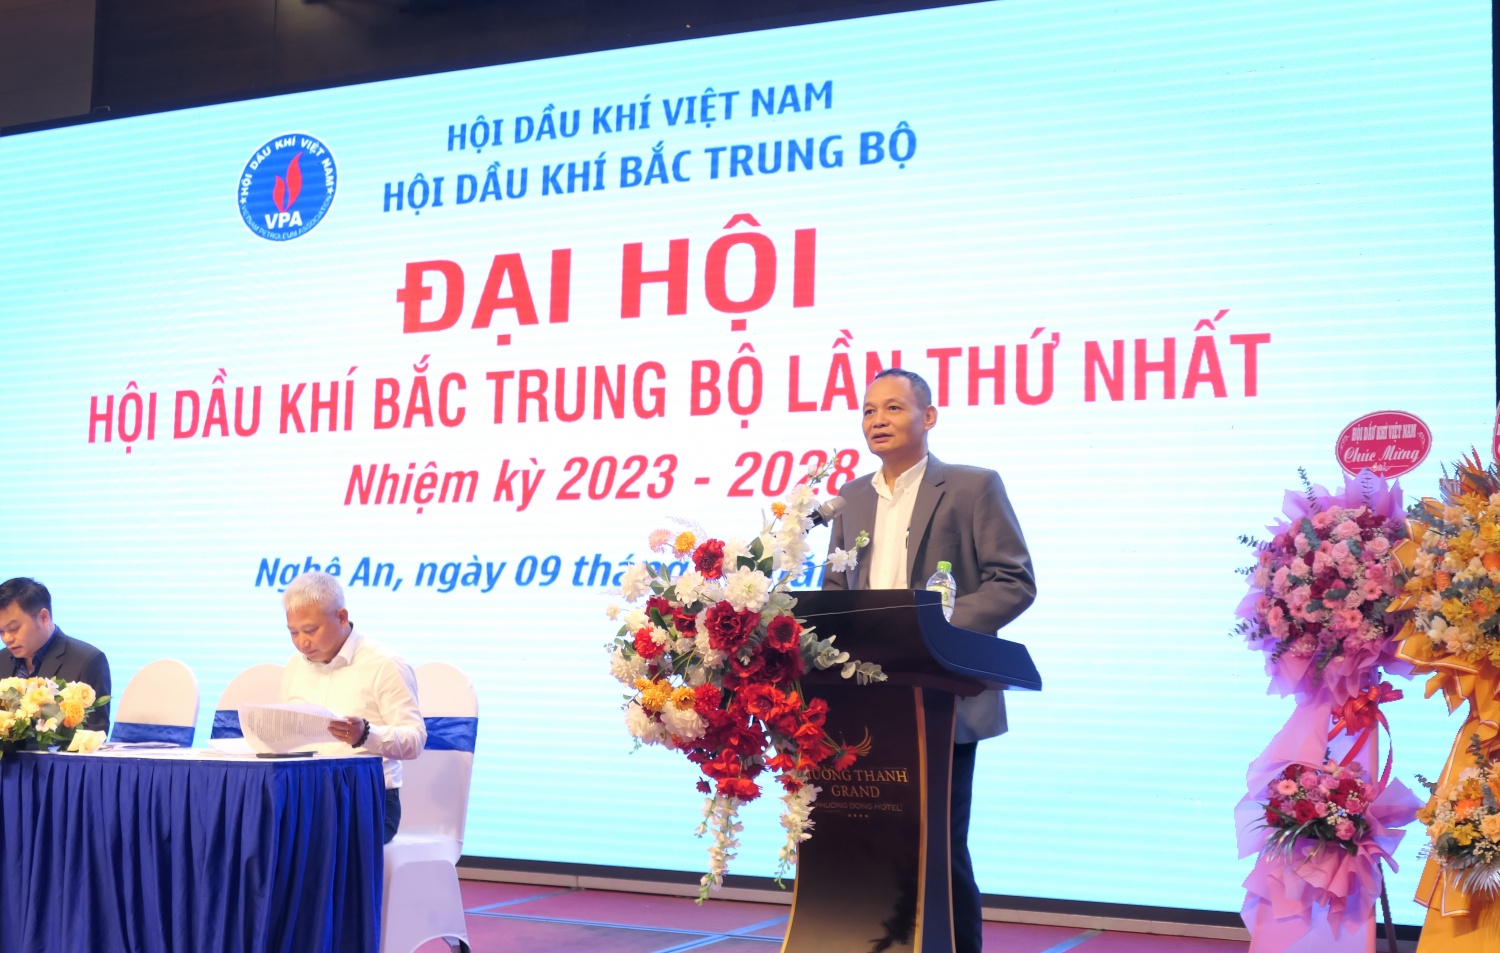 Ông Trịnh Bảo Ngọc - Chủ tịch lâm thời Hội Dầu khí Bắc Trung Bộ phát biểu tại Đại hội